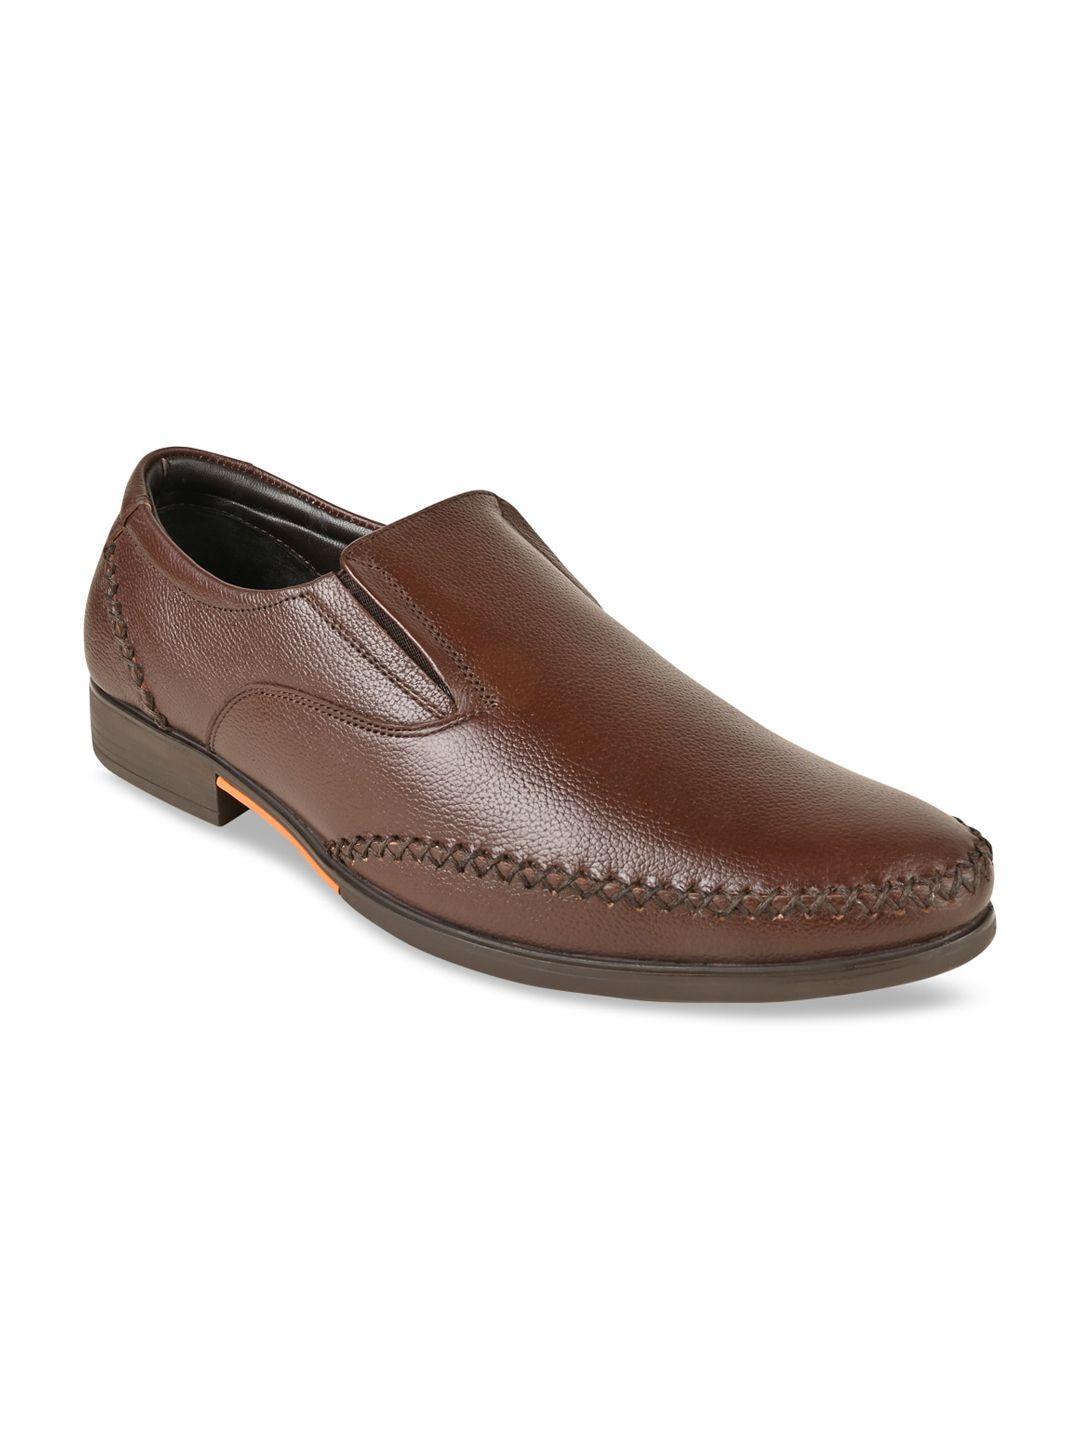 regal-men-leather-formal-slip-on-shoes